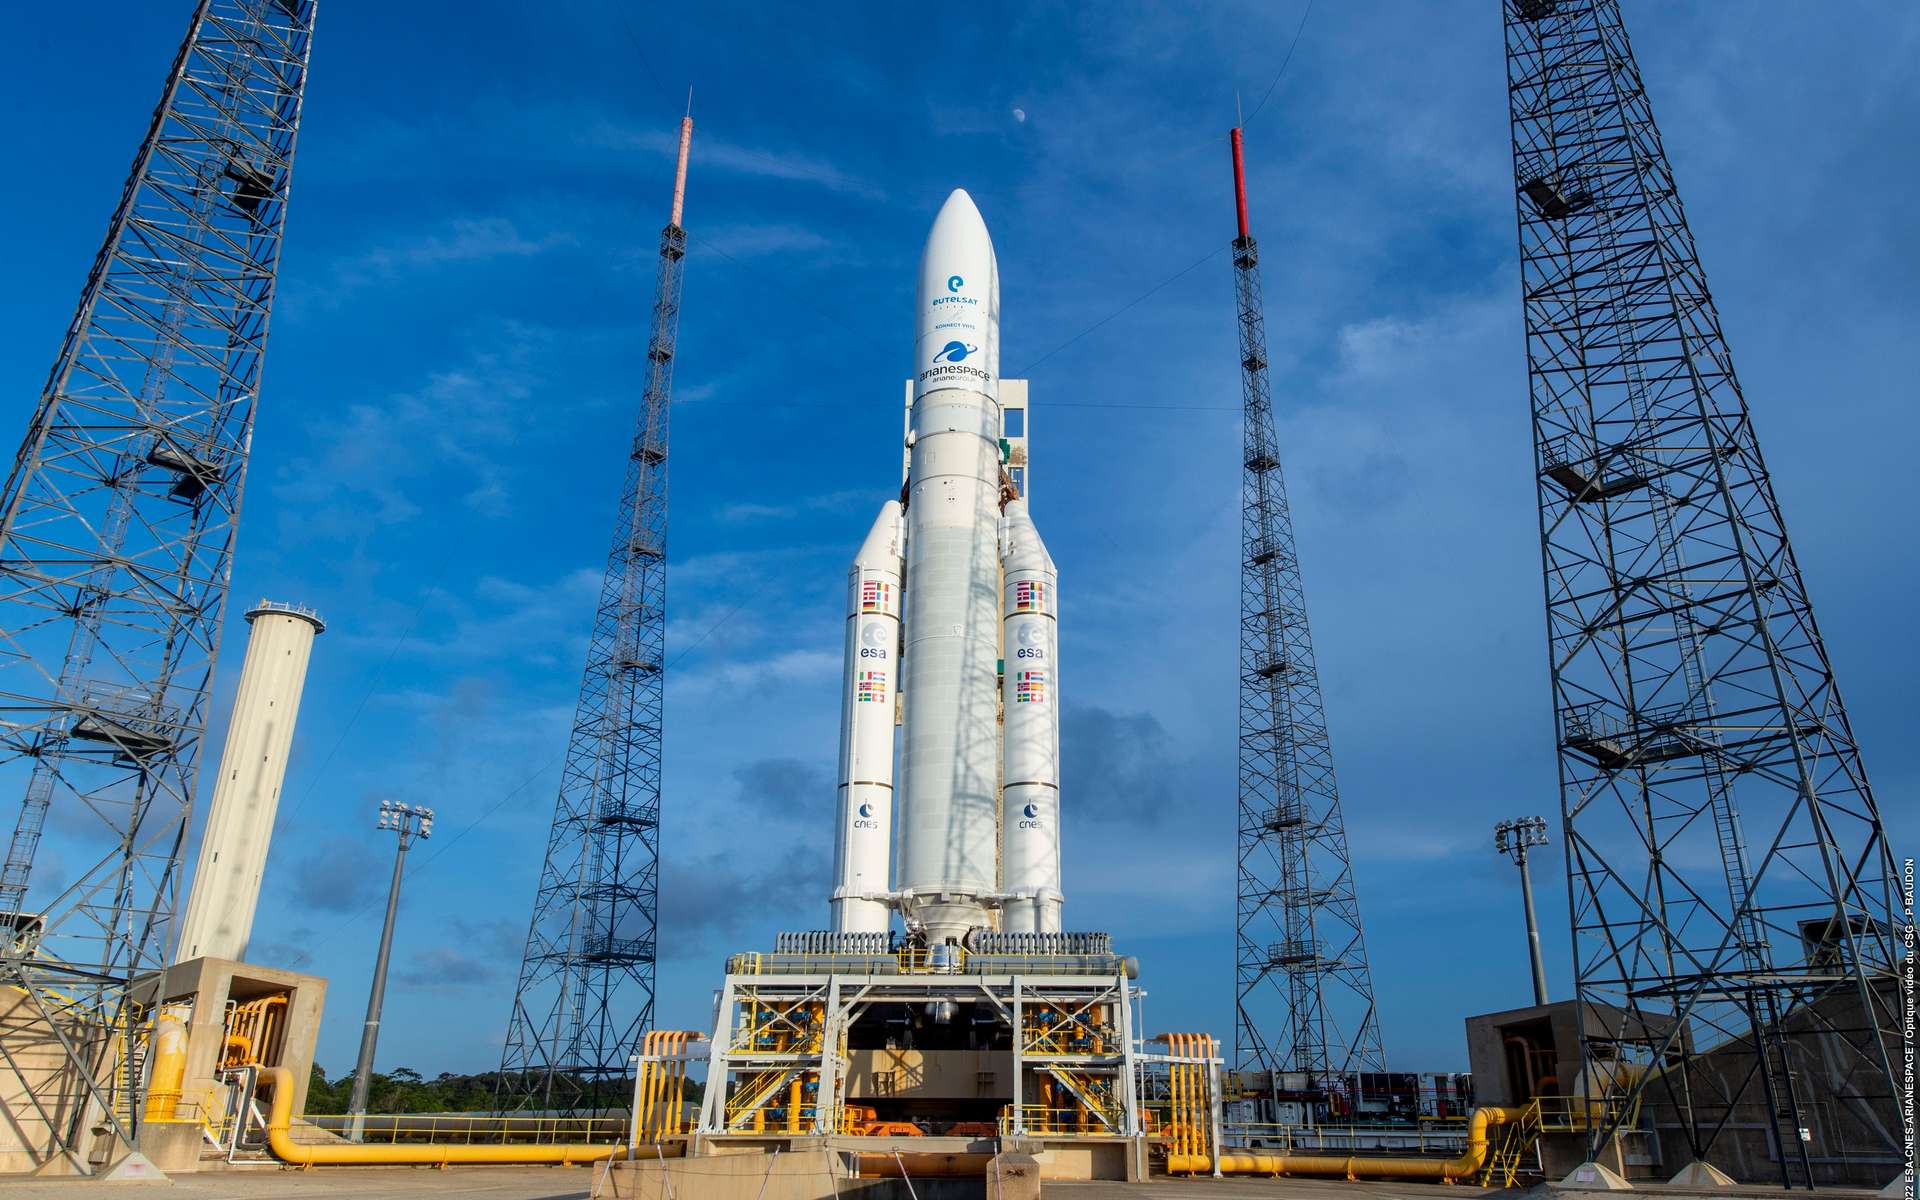 Vivez avec nous le dernier lancement de la mythique Ariane 5 !